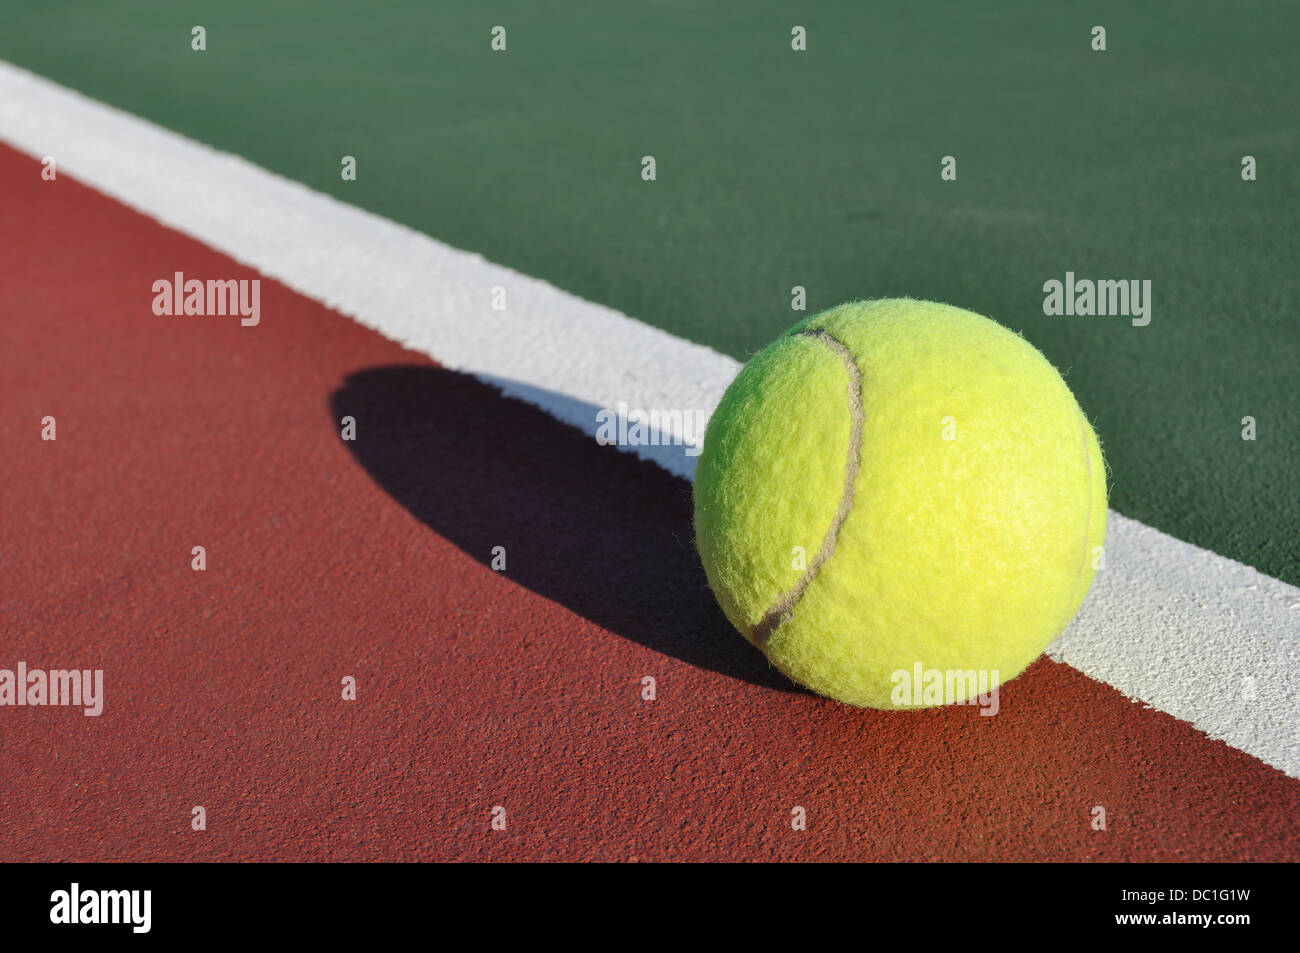 Balle de tennis sur une cour au niveau de la ligne de base Photo Stock -  Alamy